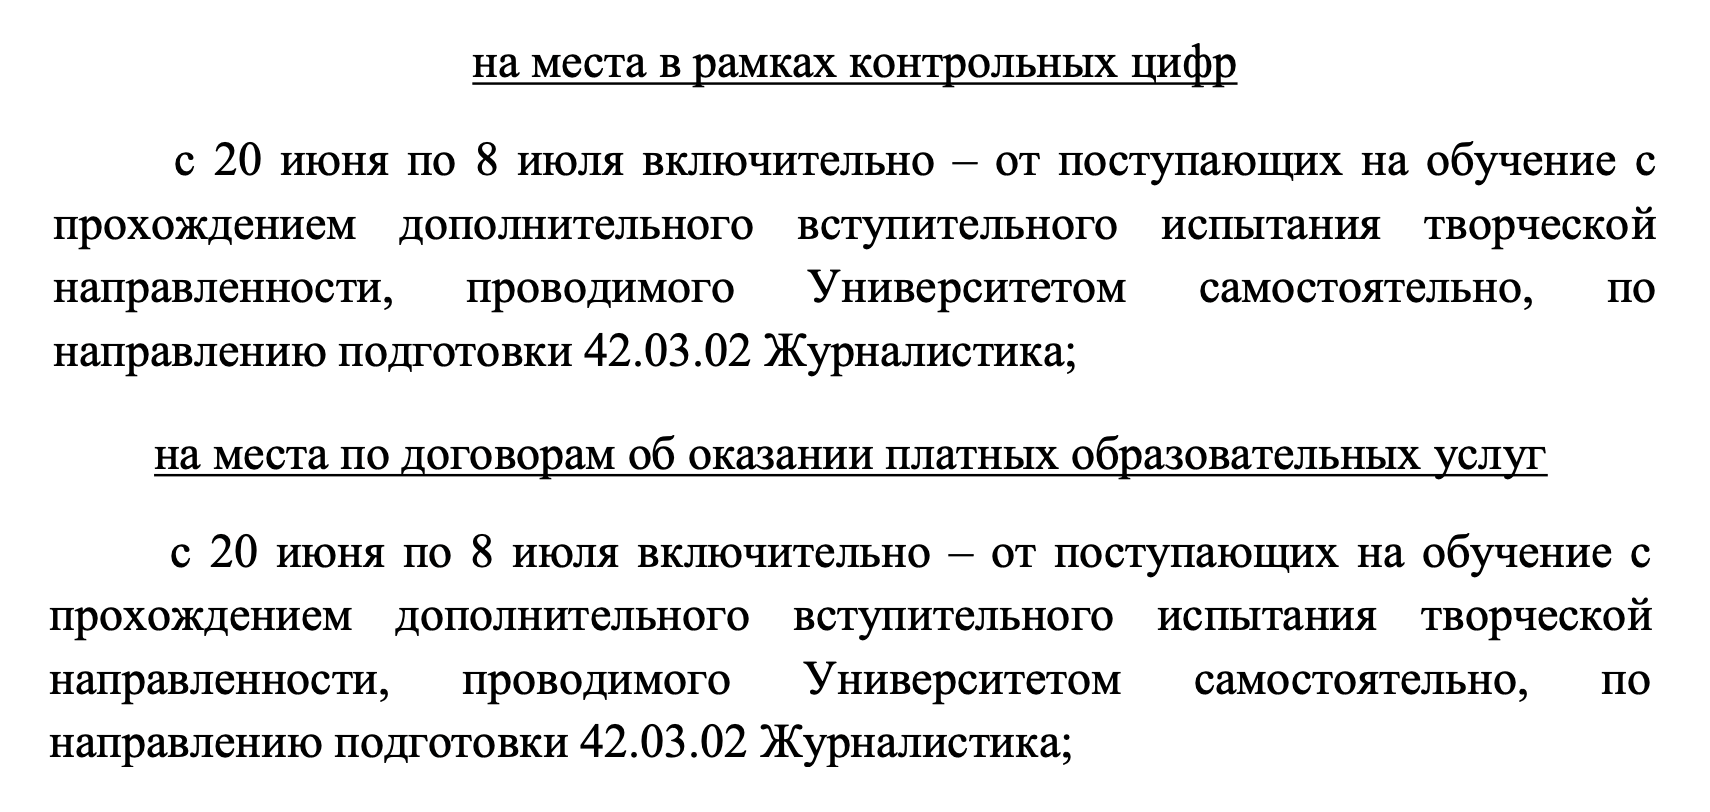 А в МГЛУ абитуриентам журфака нельзя подать документы на платное после 8 июля из⁠-⁠за дополнительного экзамена. Источник: linguanet.ru